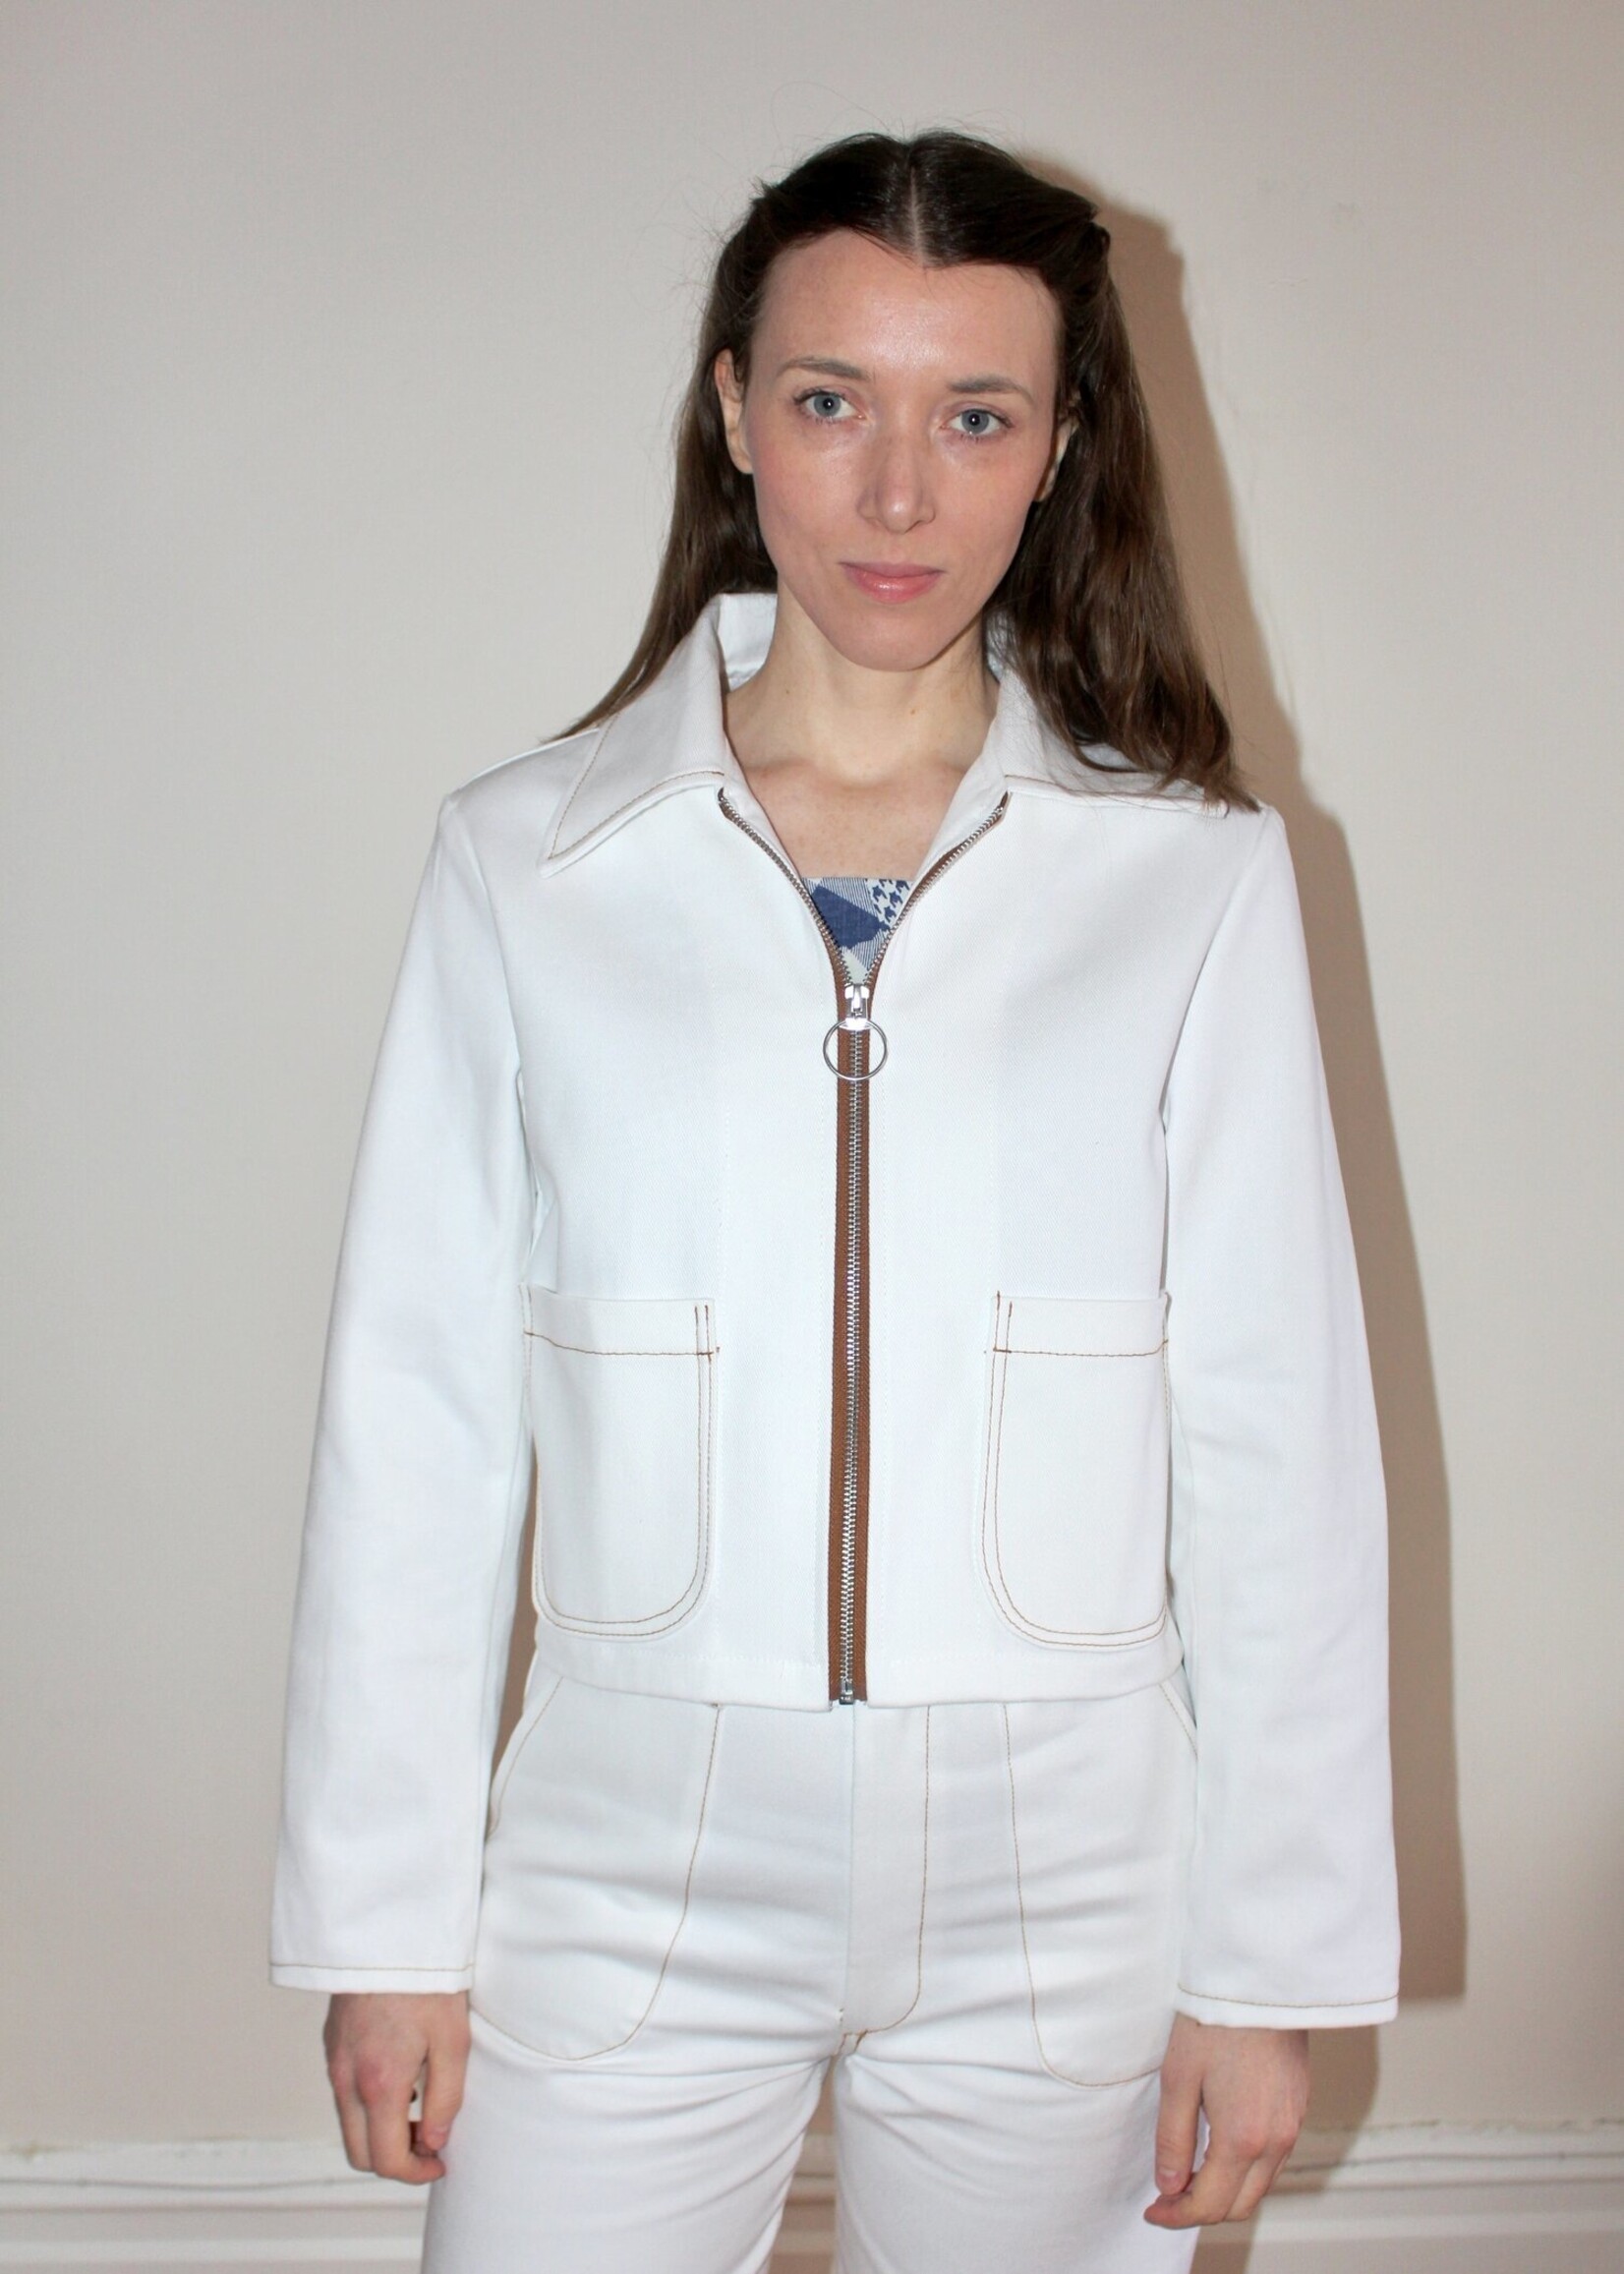 Studio Citizen Studio Citizen Zipper Jacket in White Denim with Brown Stitching